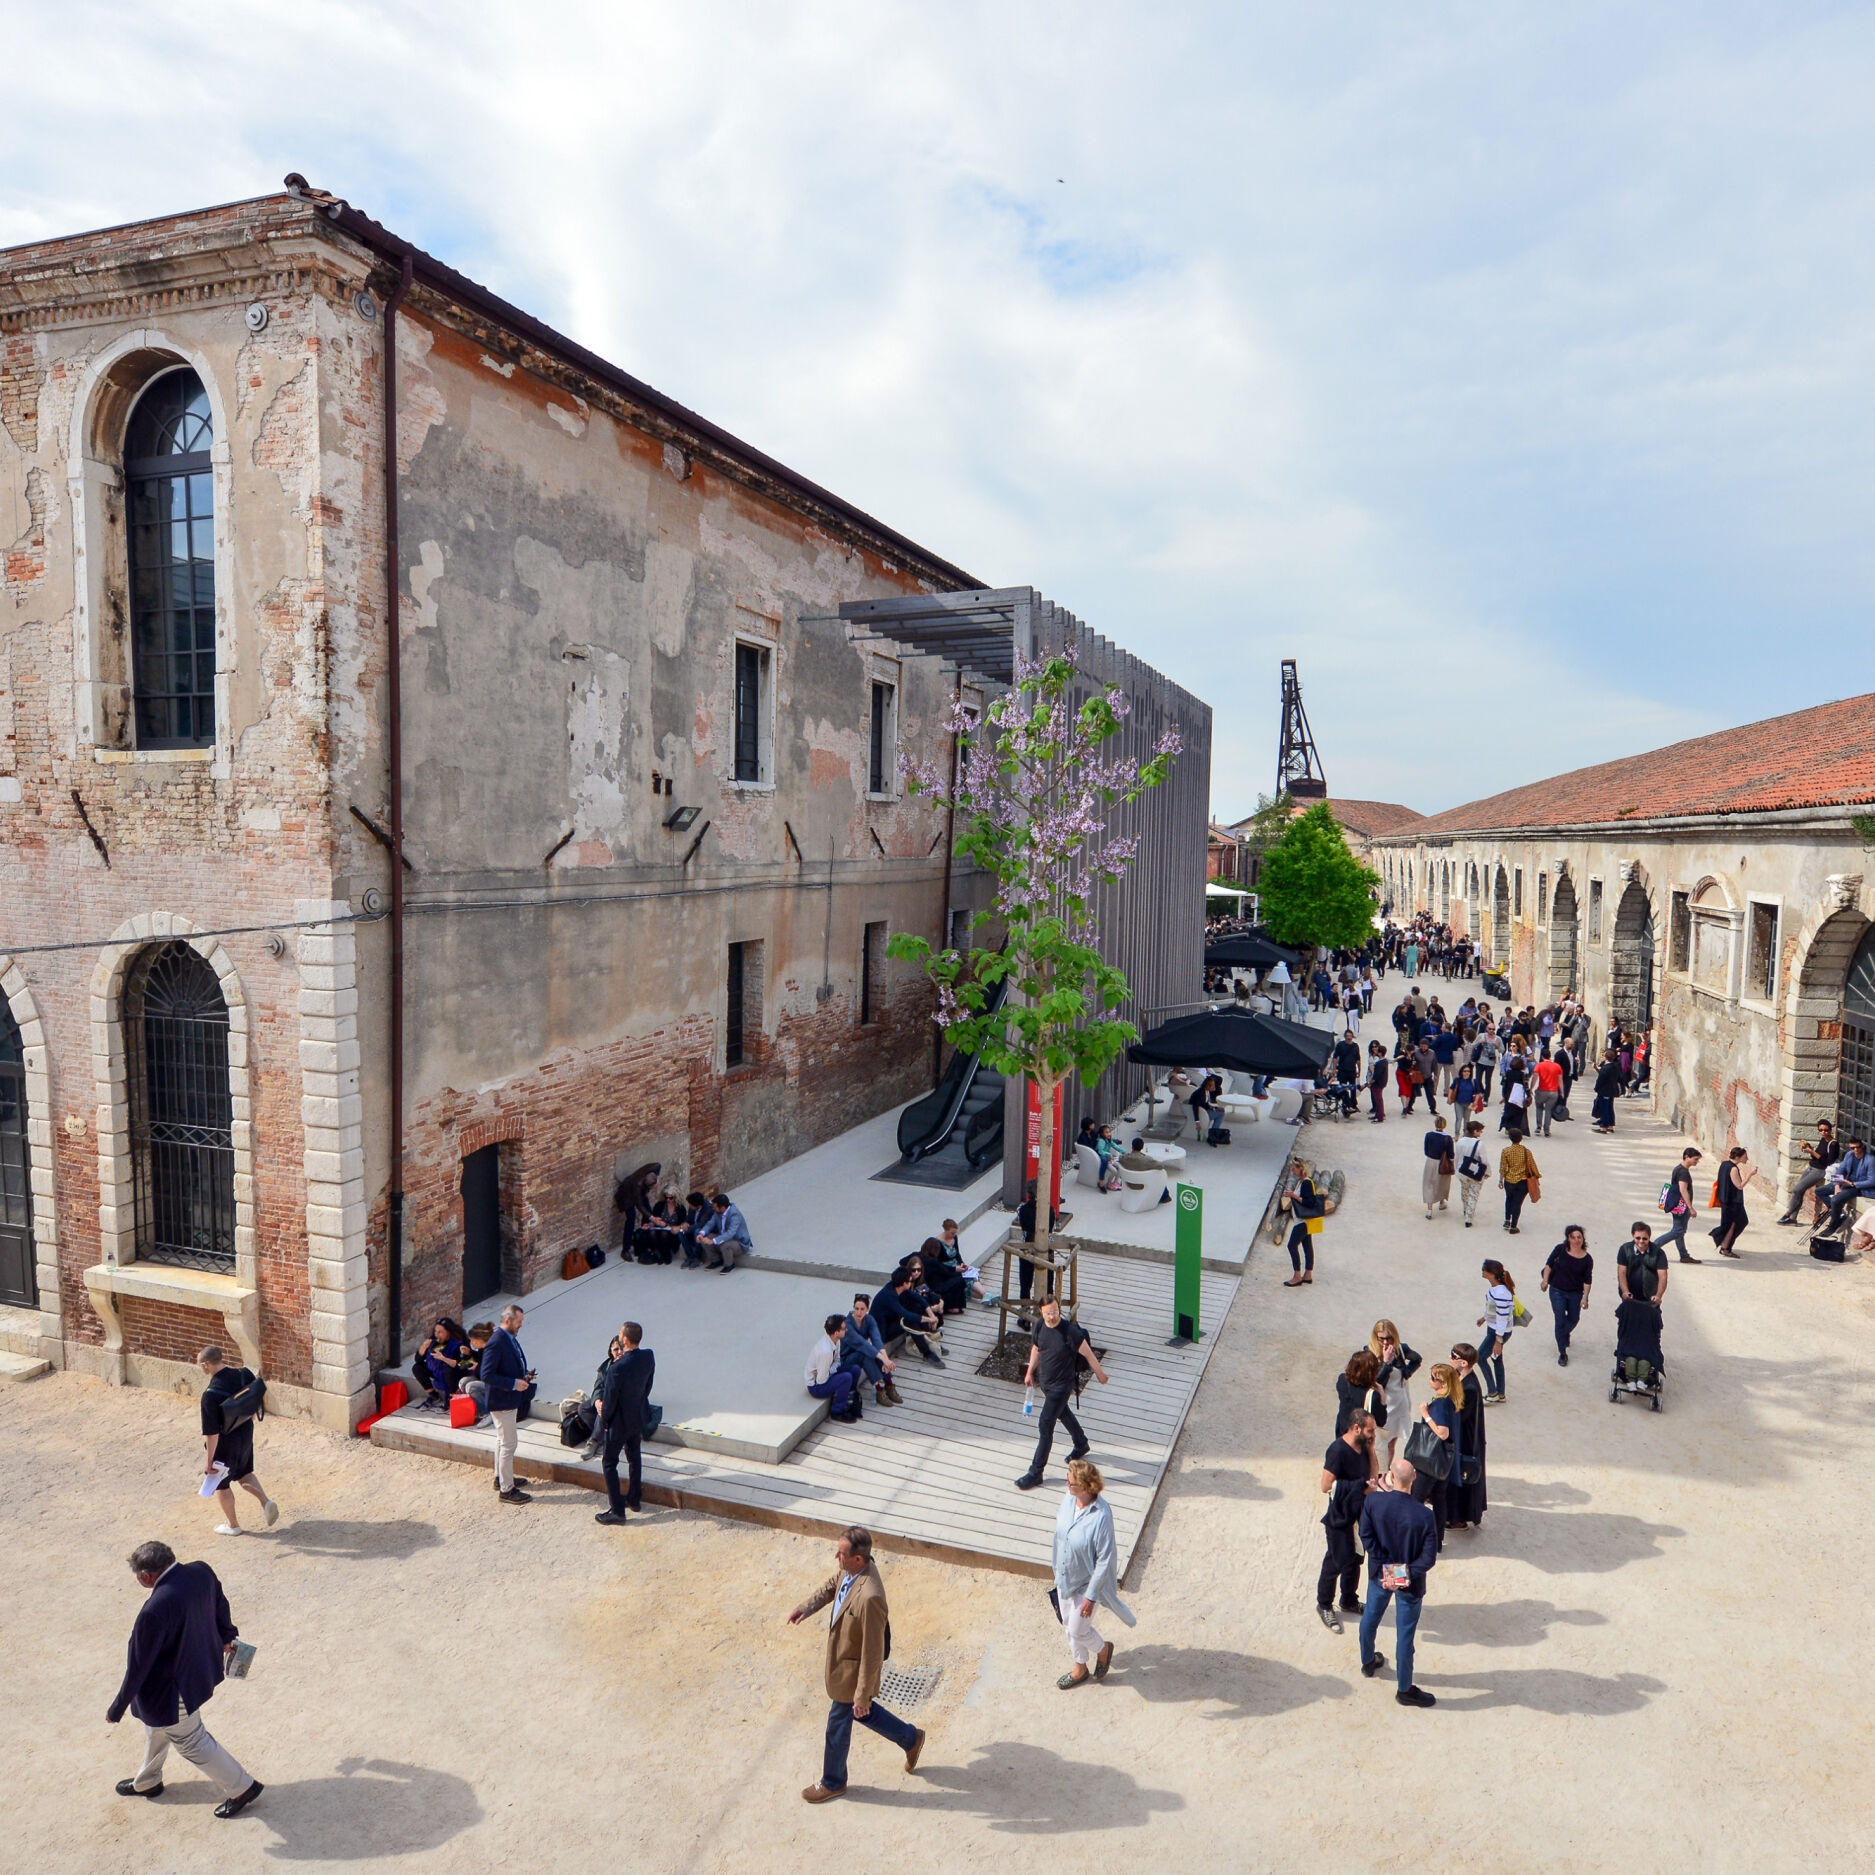 La Biennale Di Venezia location overview